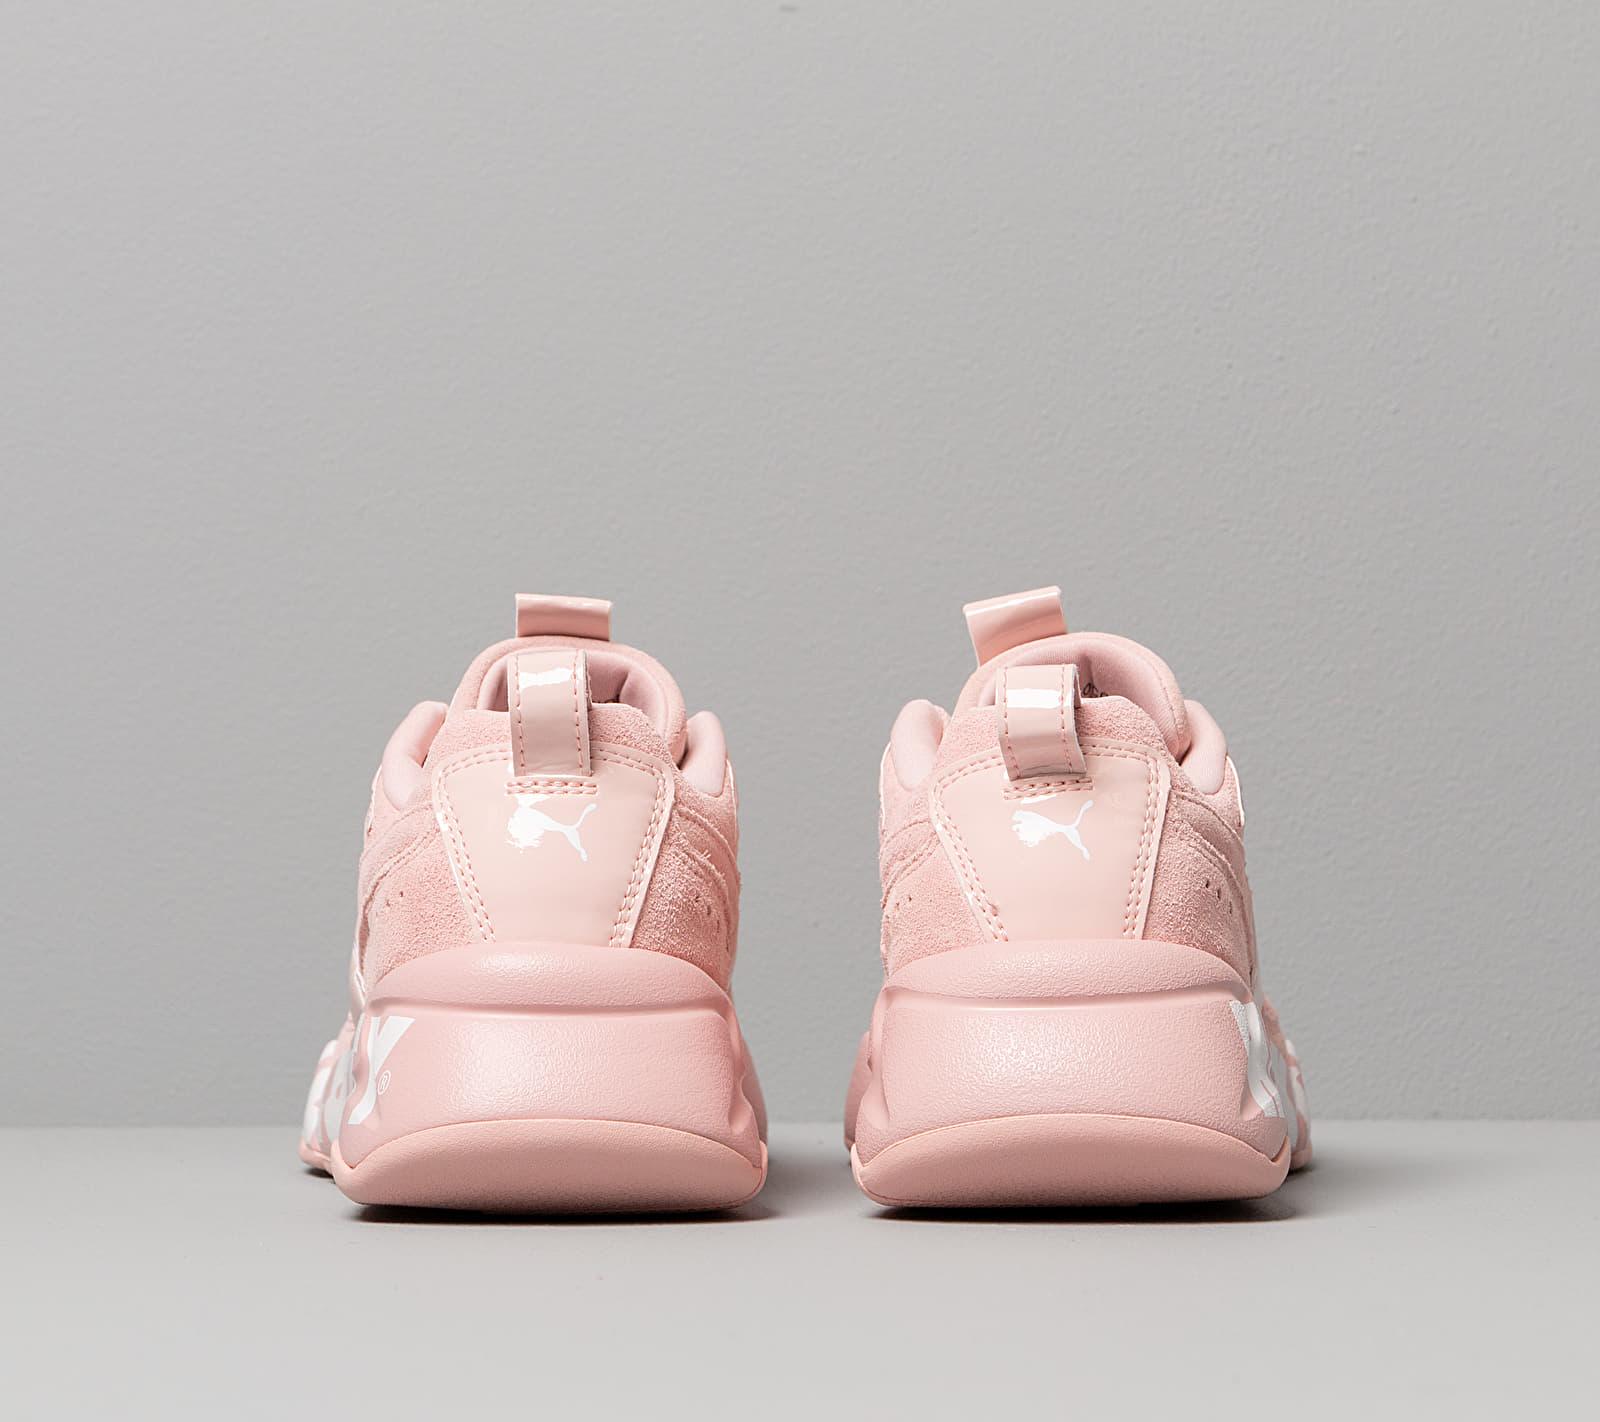 PUMA X Hello Kitty Nova 2 Women's Sneakers in Pink | Lyst